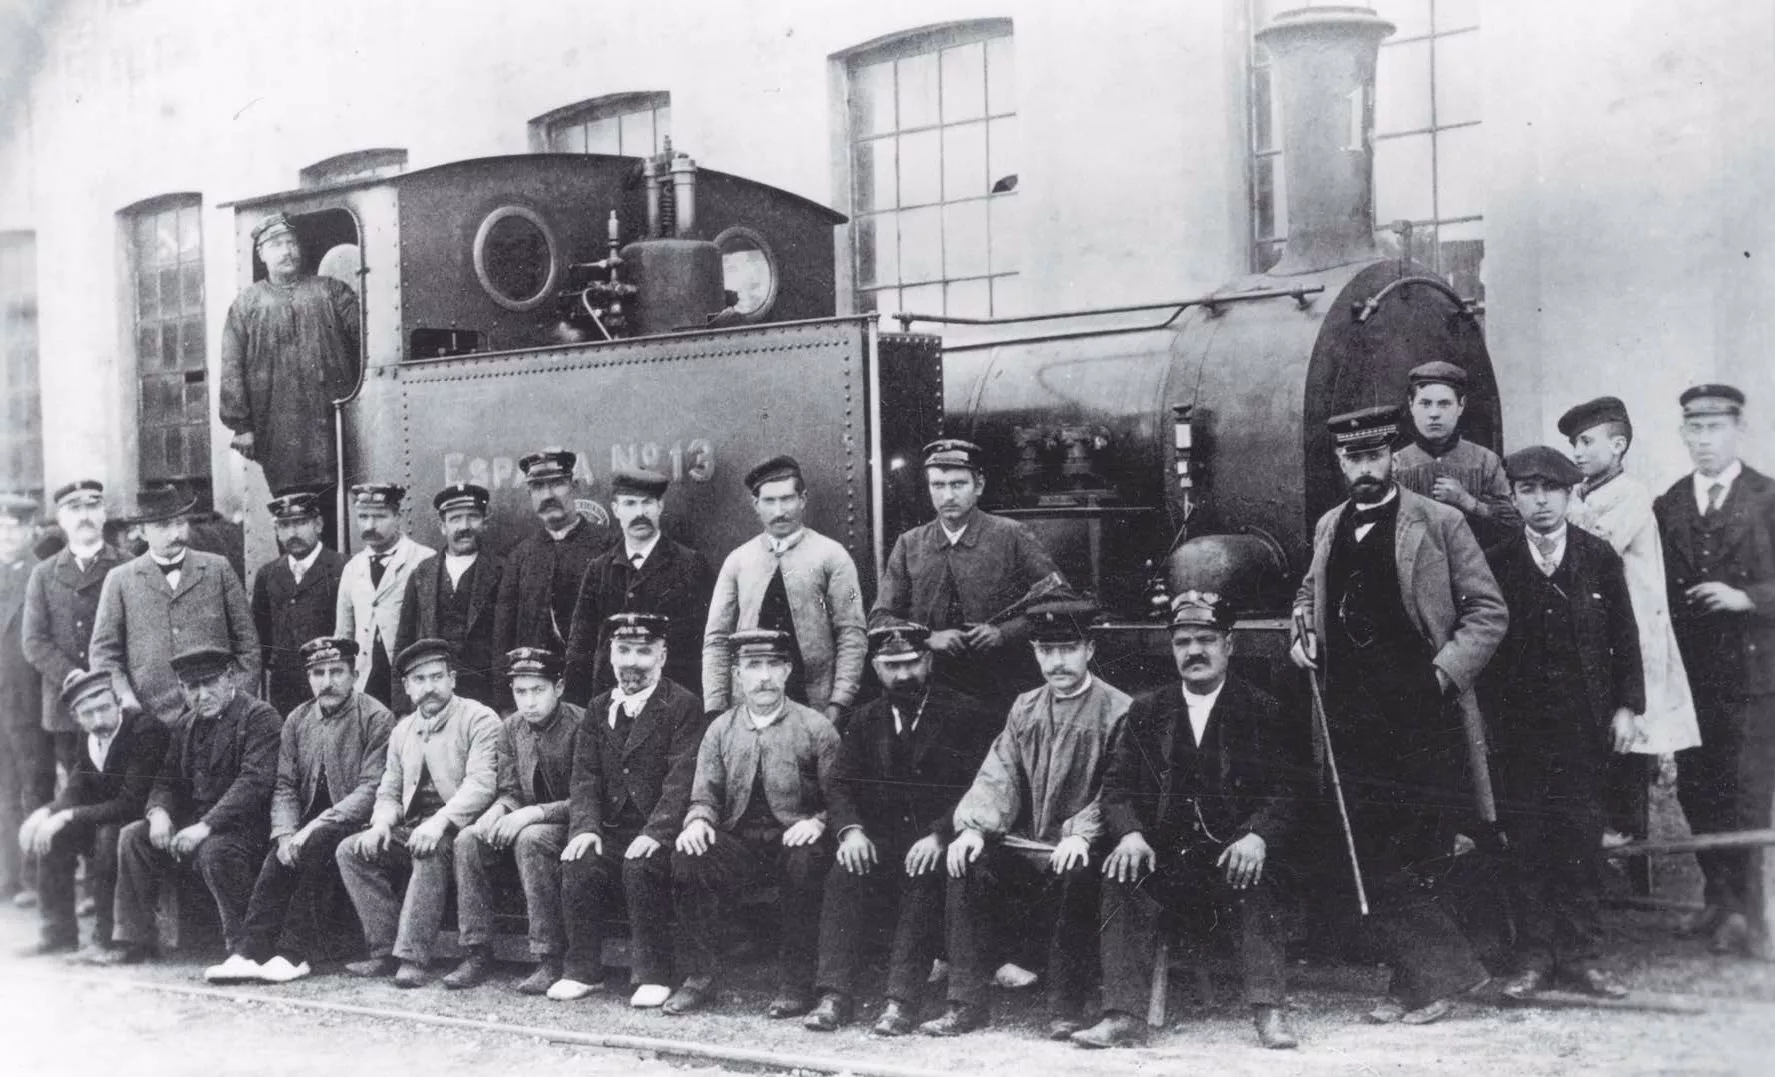 L’equip de maquinistes i fogoners de la companyia juntament amb els caps i els aprenents amb la locomotora de vapor número 13, que remolcava els vagons, l’any 1892